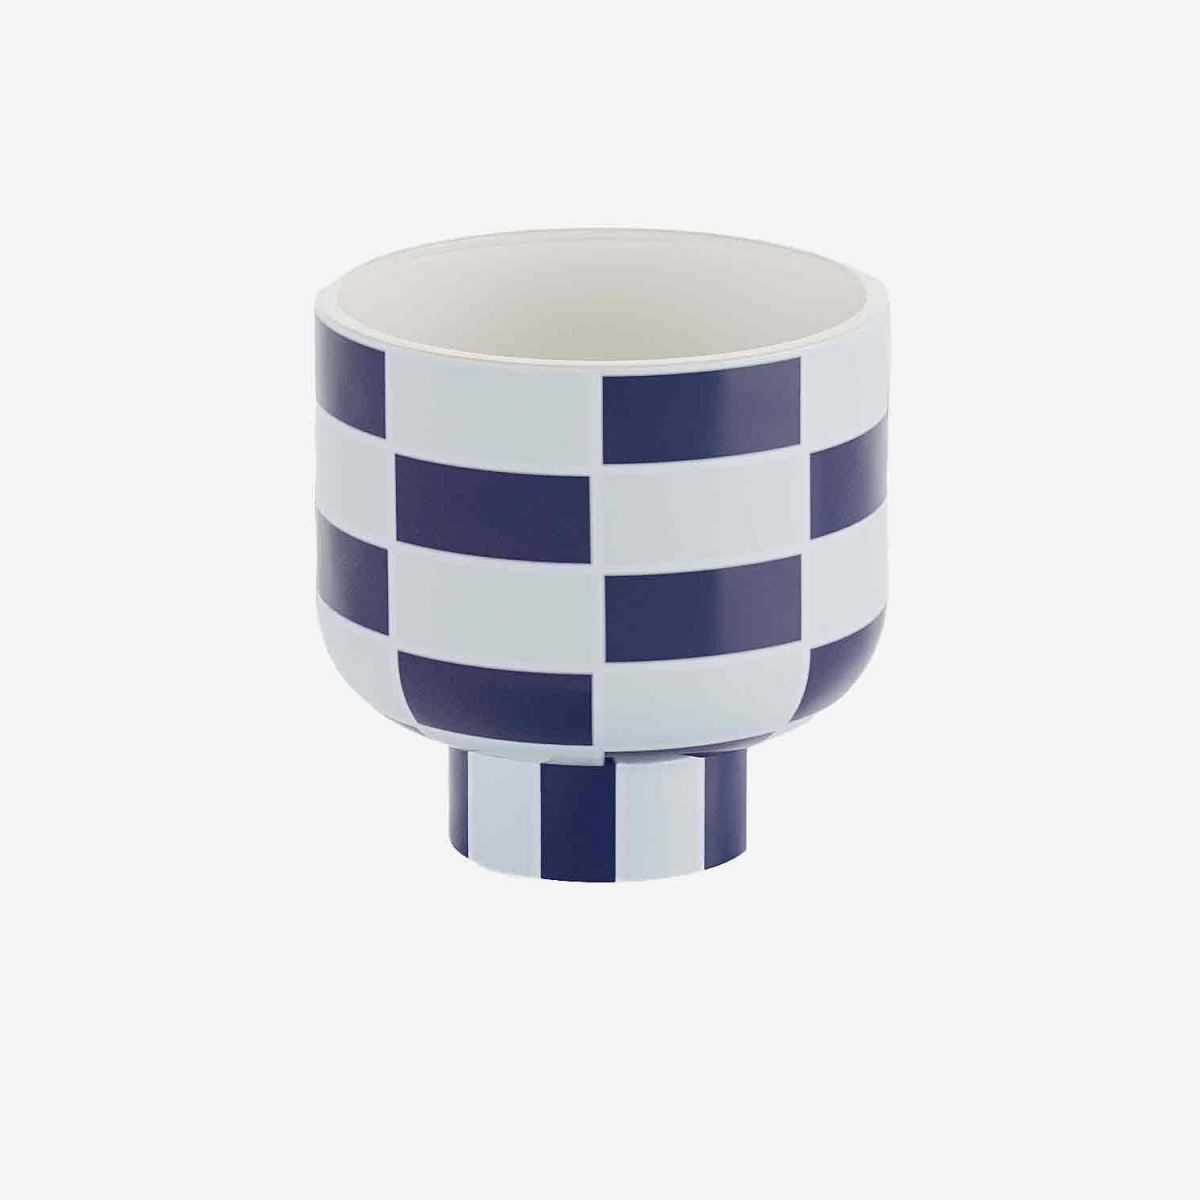 Le vase céramique, avec son motif damier bleu marine, rappelle l'élégance d'un échiquier. A adopter pour un intérieur hauts en couleurs !